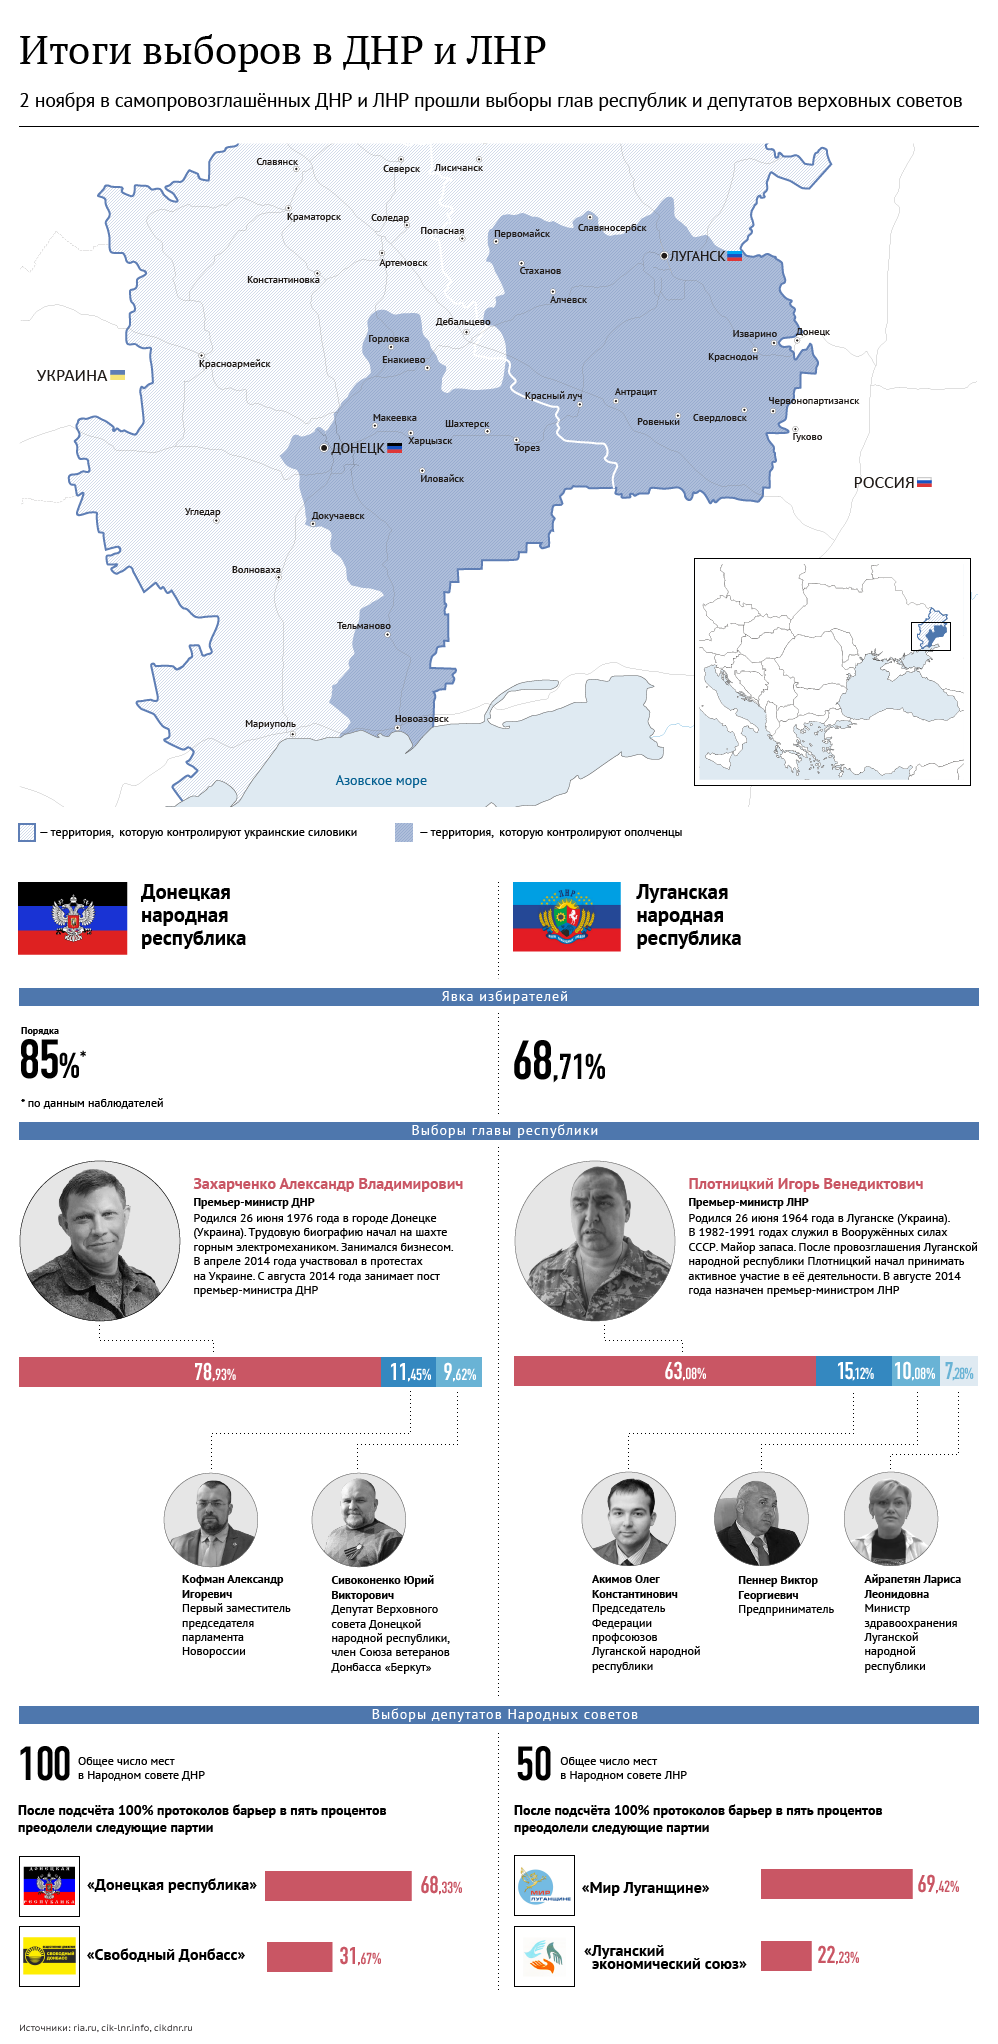 Итоги выборов в ДНР и ЛНР. Инфографика